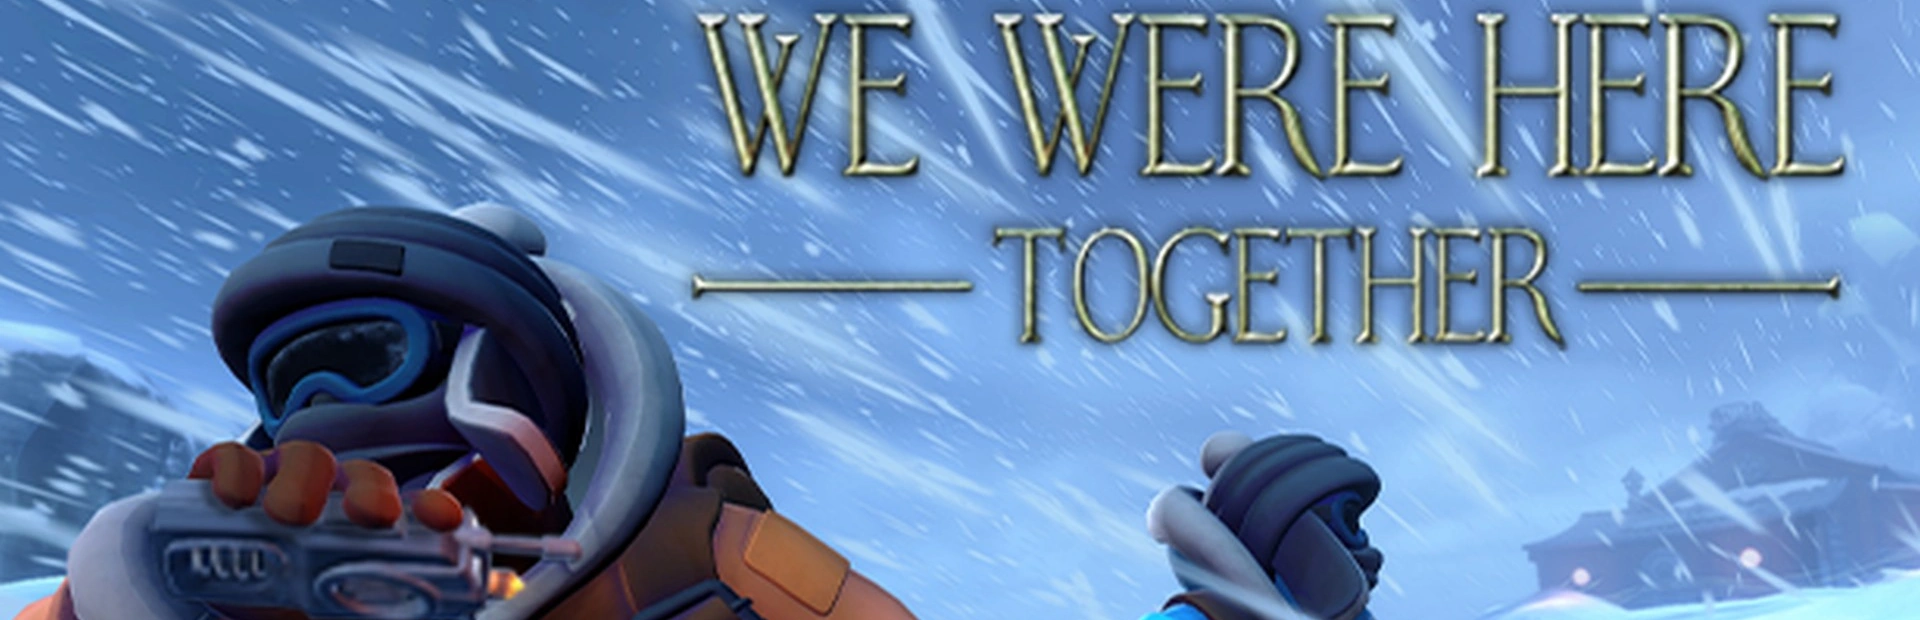 دانلود بازی We Were Here Together برای کامپیوتر | گیمباتو